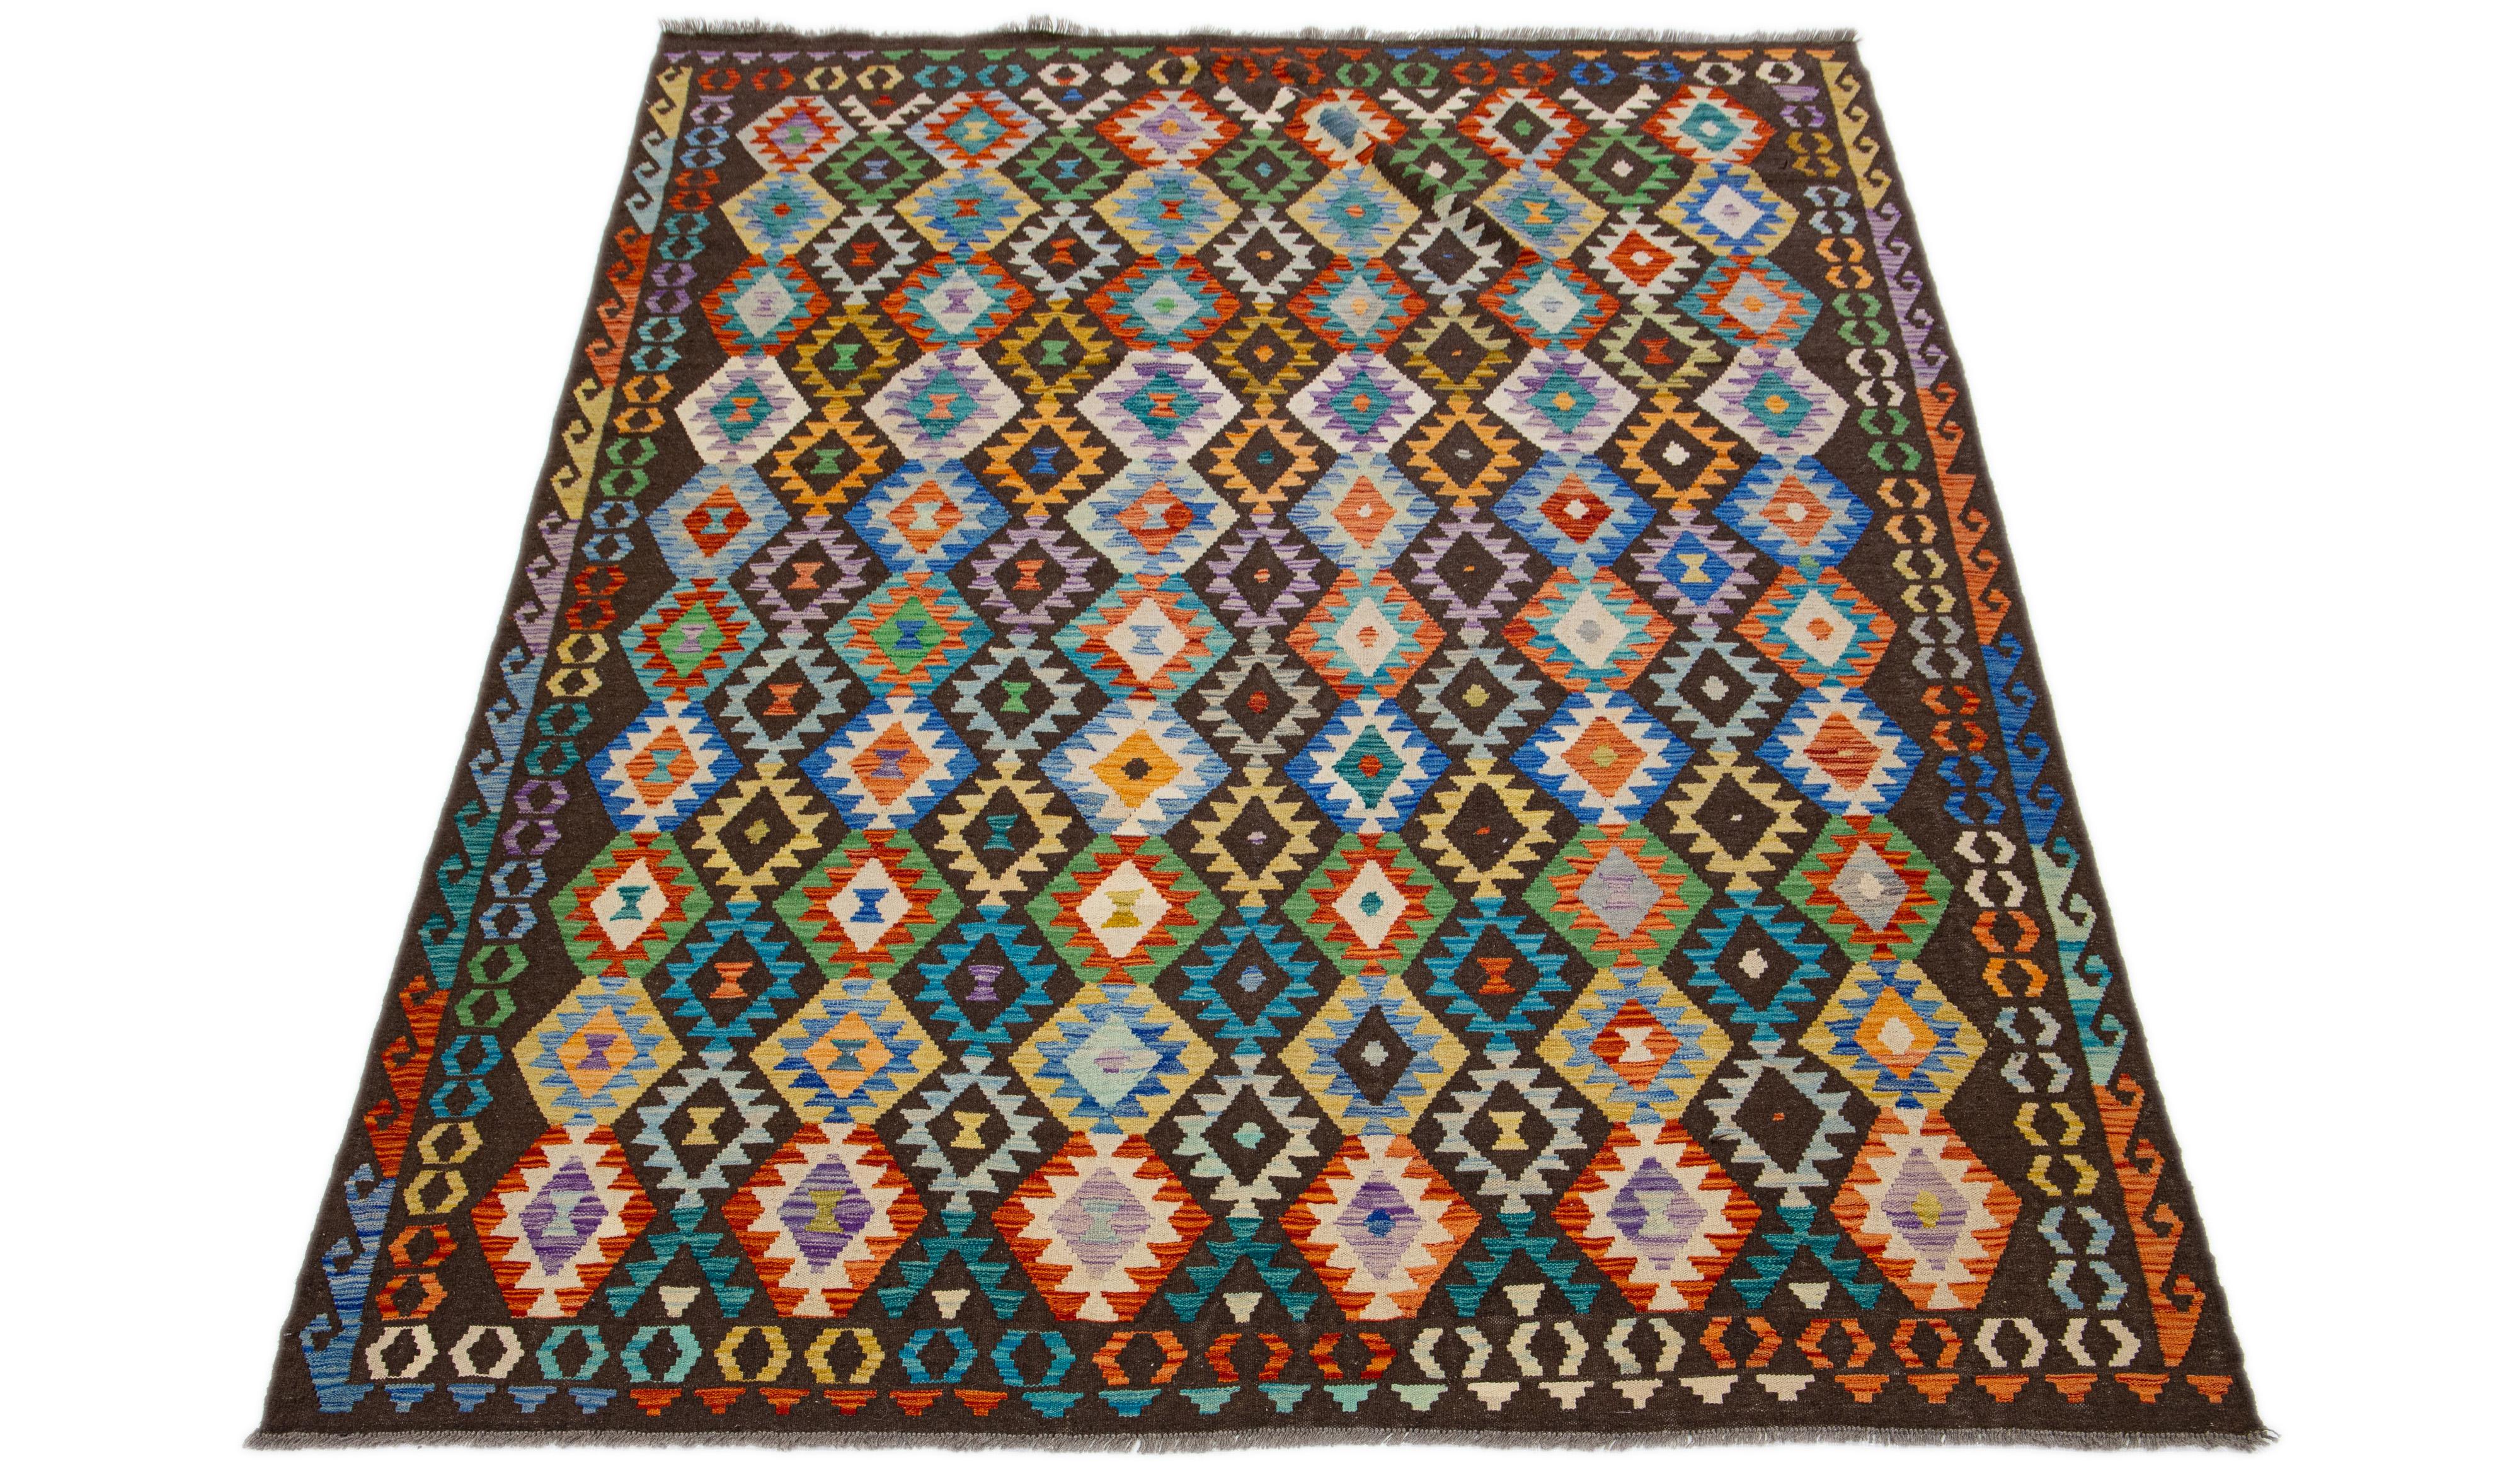 Dieser Wollteppich ist ein brillantes Beispiel für den modernen Kilim-Stil. Es zeichnet sich durch ein lebendiges, mehrfarbiges Feld aus, das bewusst mit einem raffinierten, geometrischen Allover-Muster angereichert ist. Jedes Detail ist sorgfältig